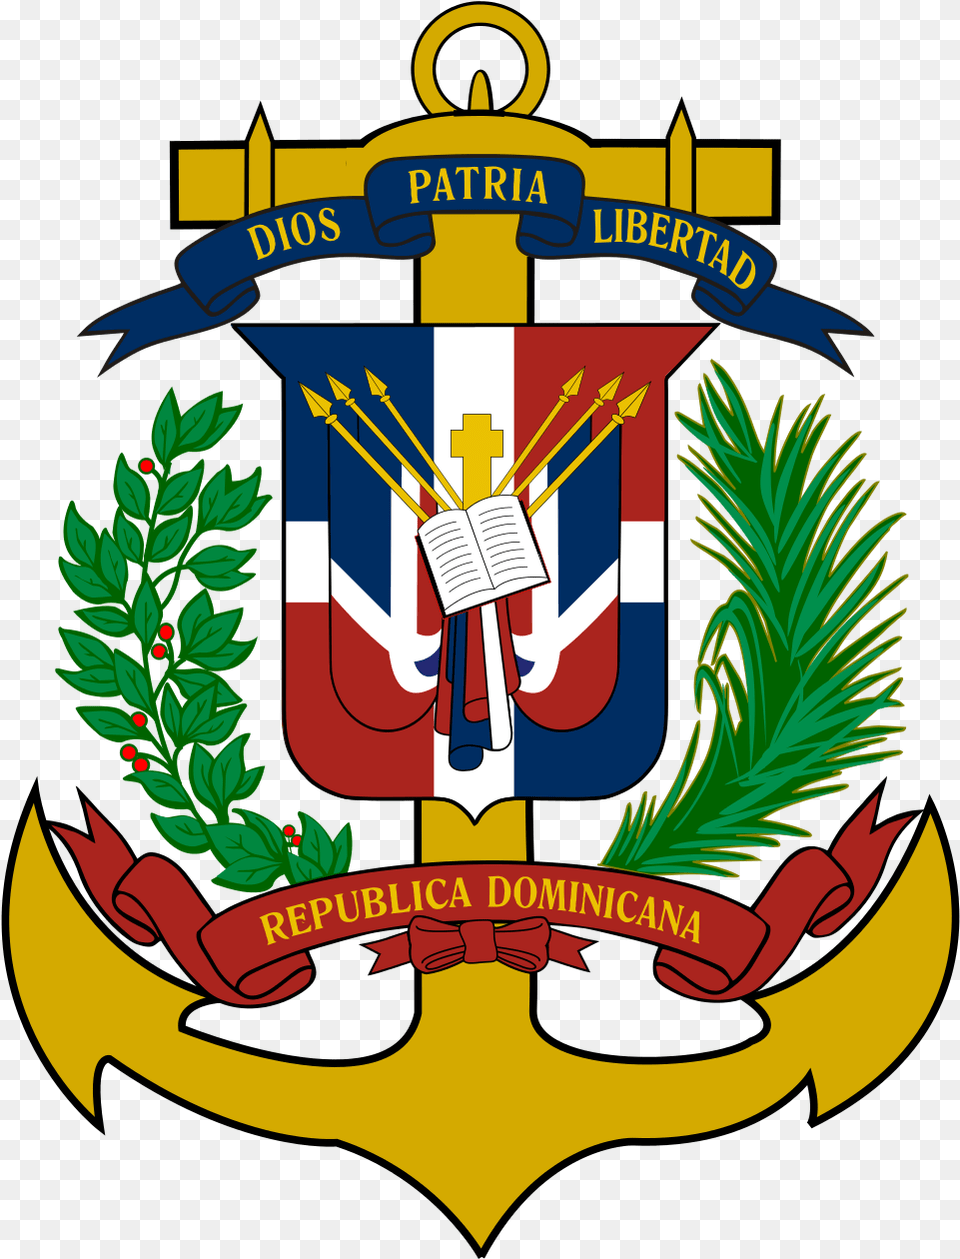 Emblema Fuerzas Armadas De Republica Dominicana, Electronics, Emblem, Hardware, Symbol Png Image